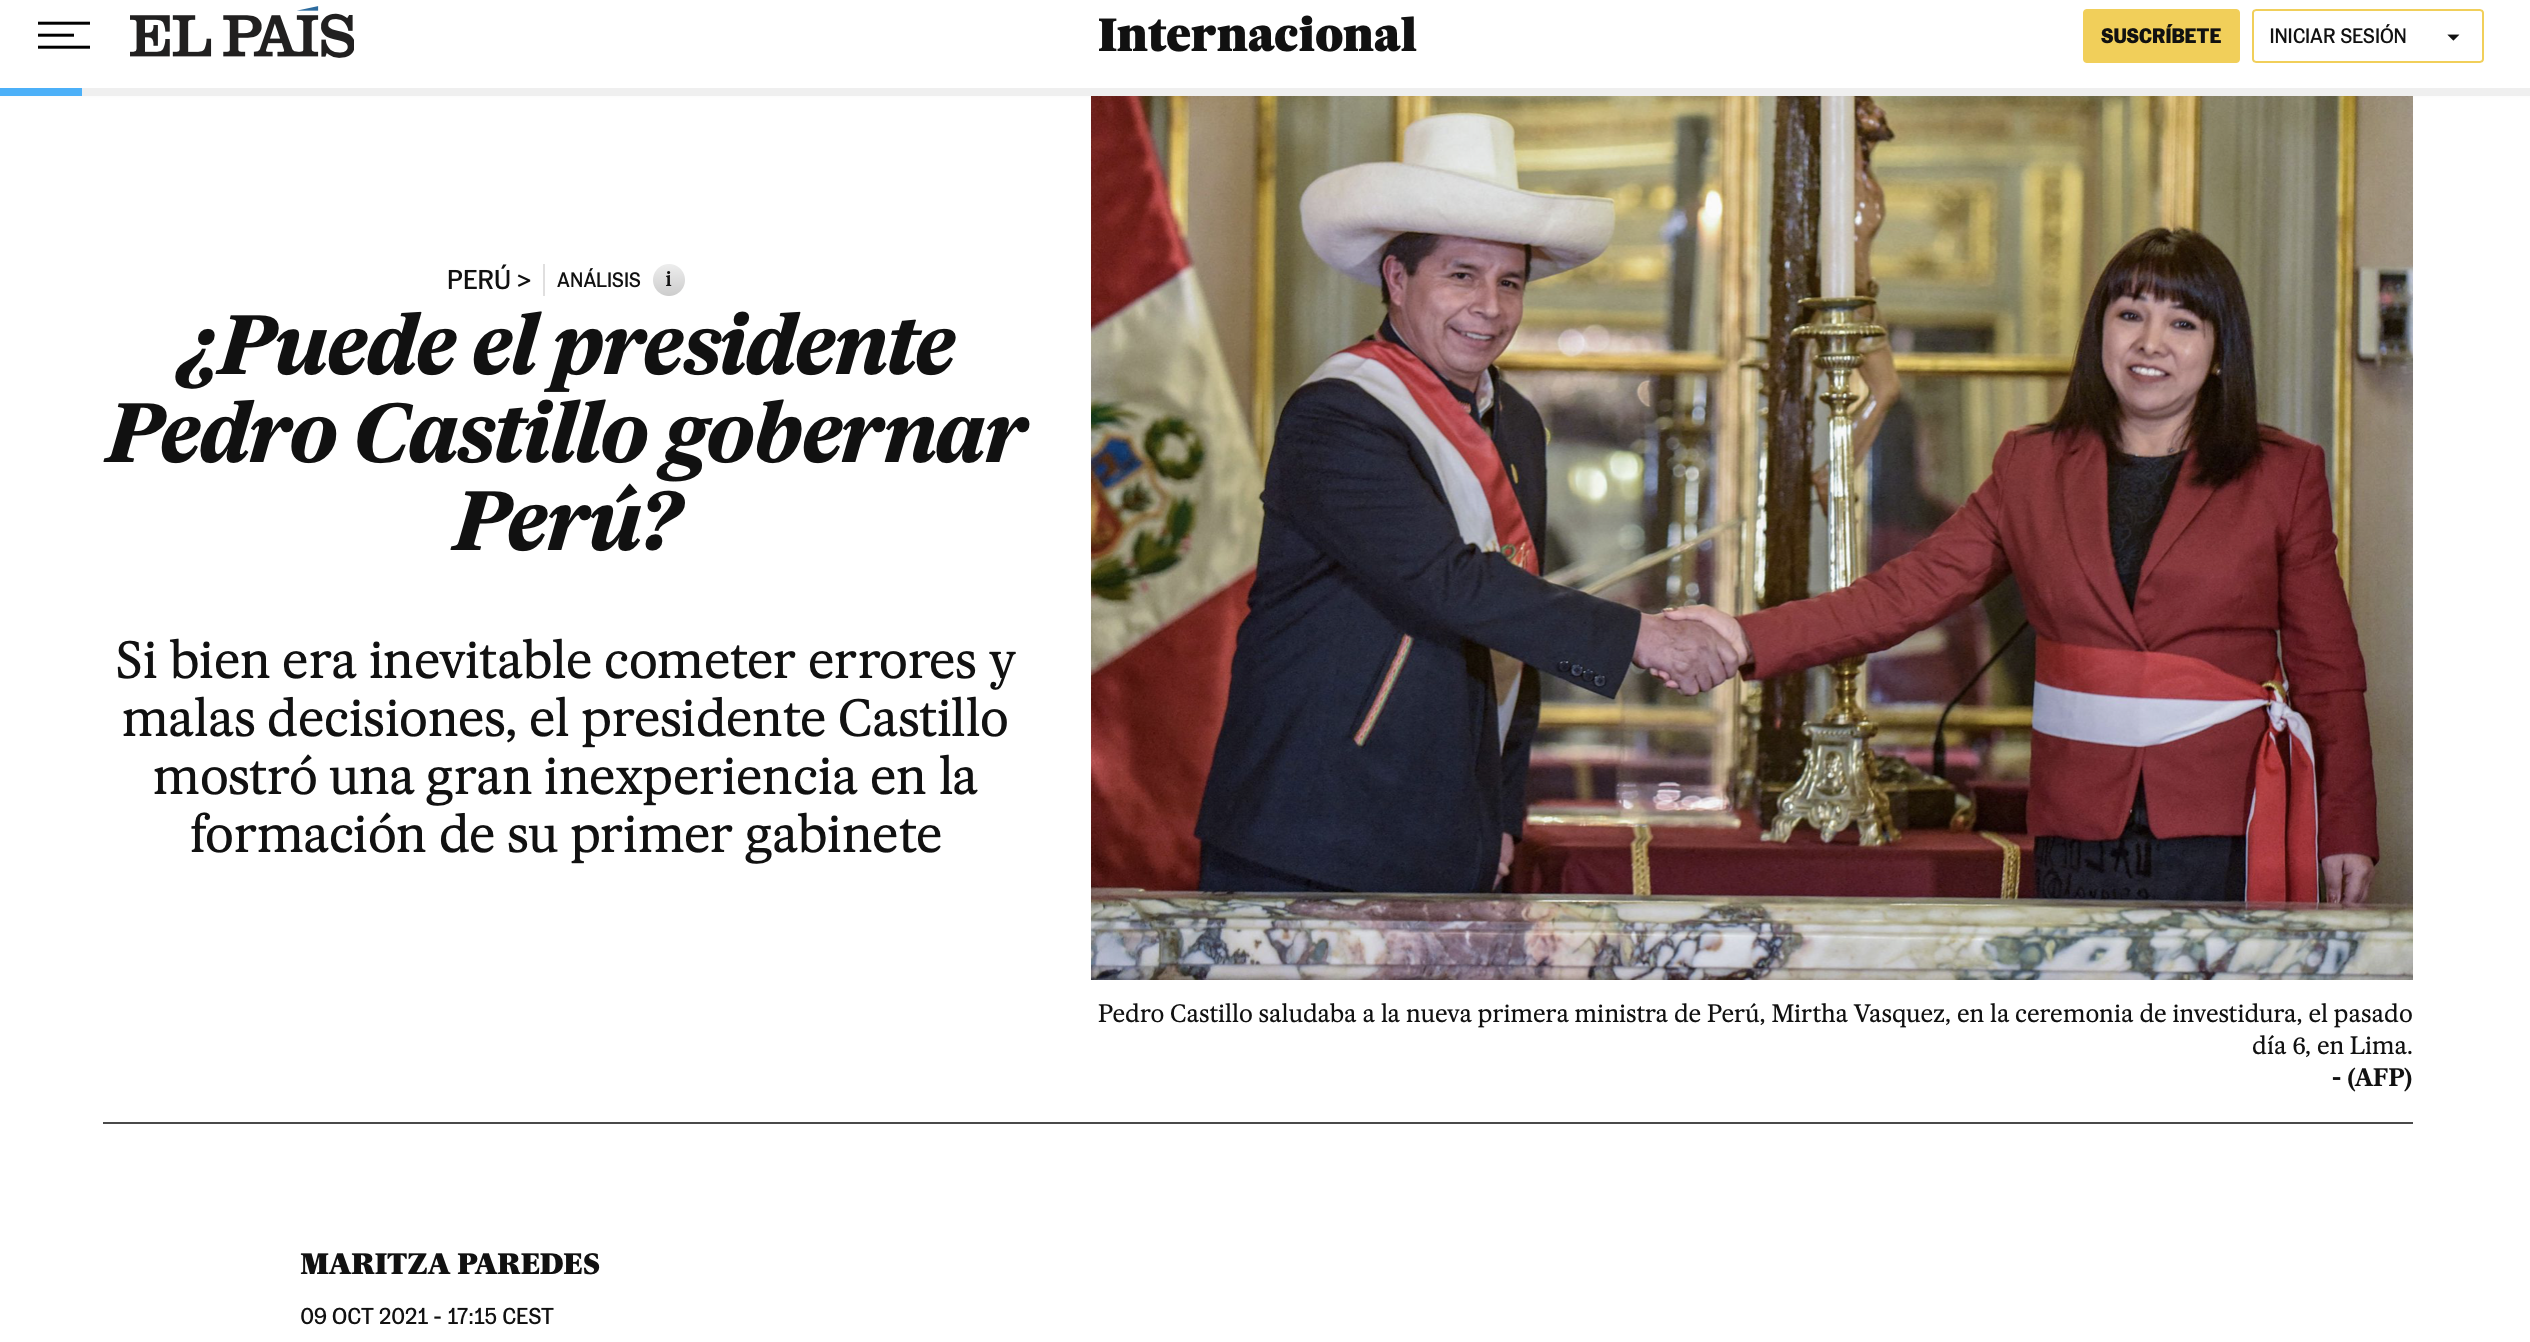 ¿Puede el presidente Pedro Castillo gobernar Perú?